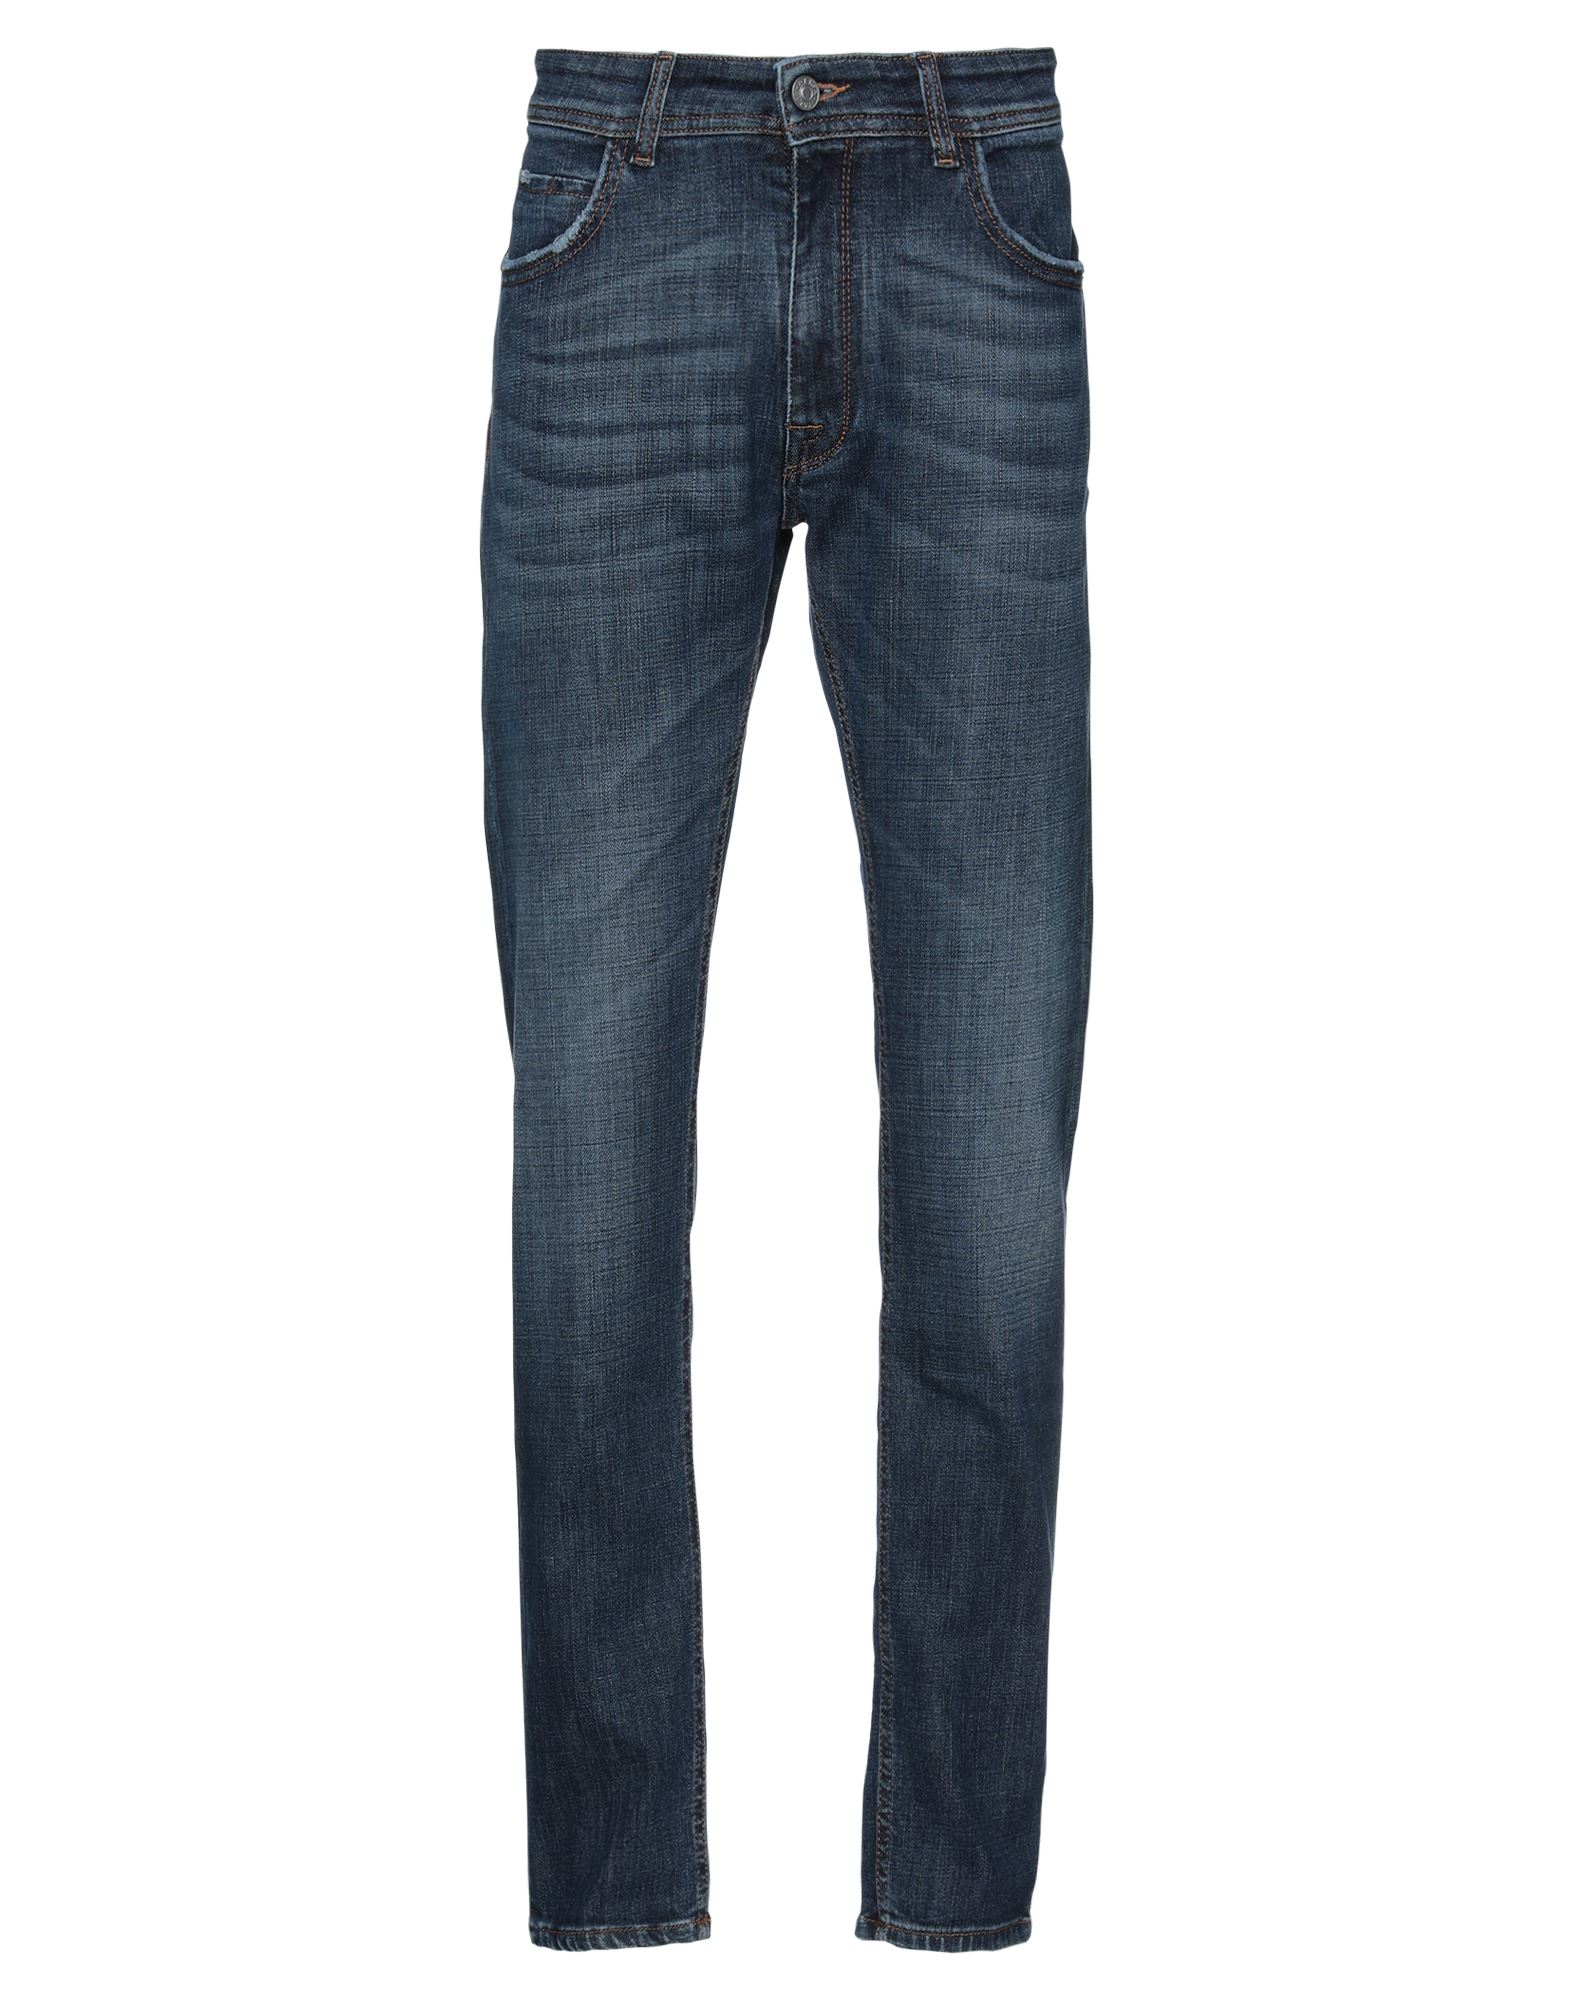 REIGN Jeans | Smart Closet